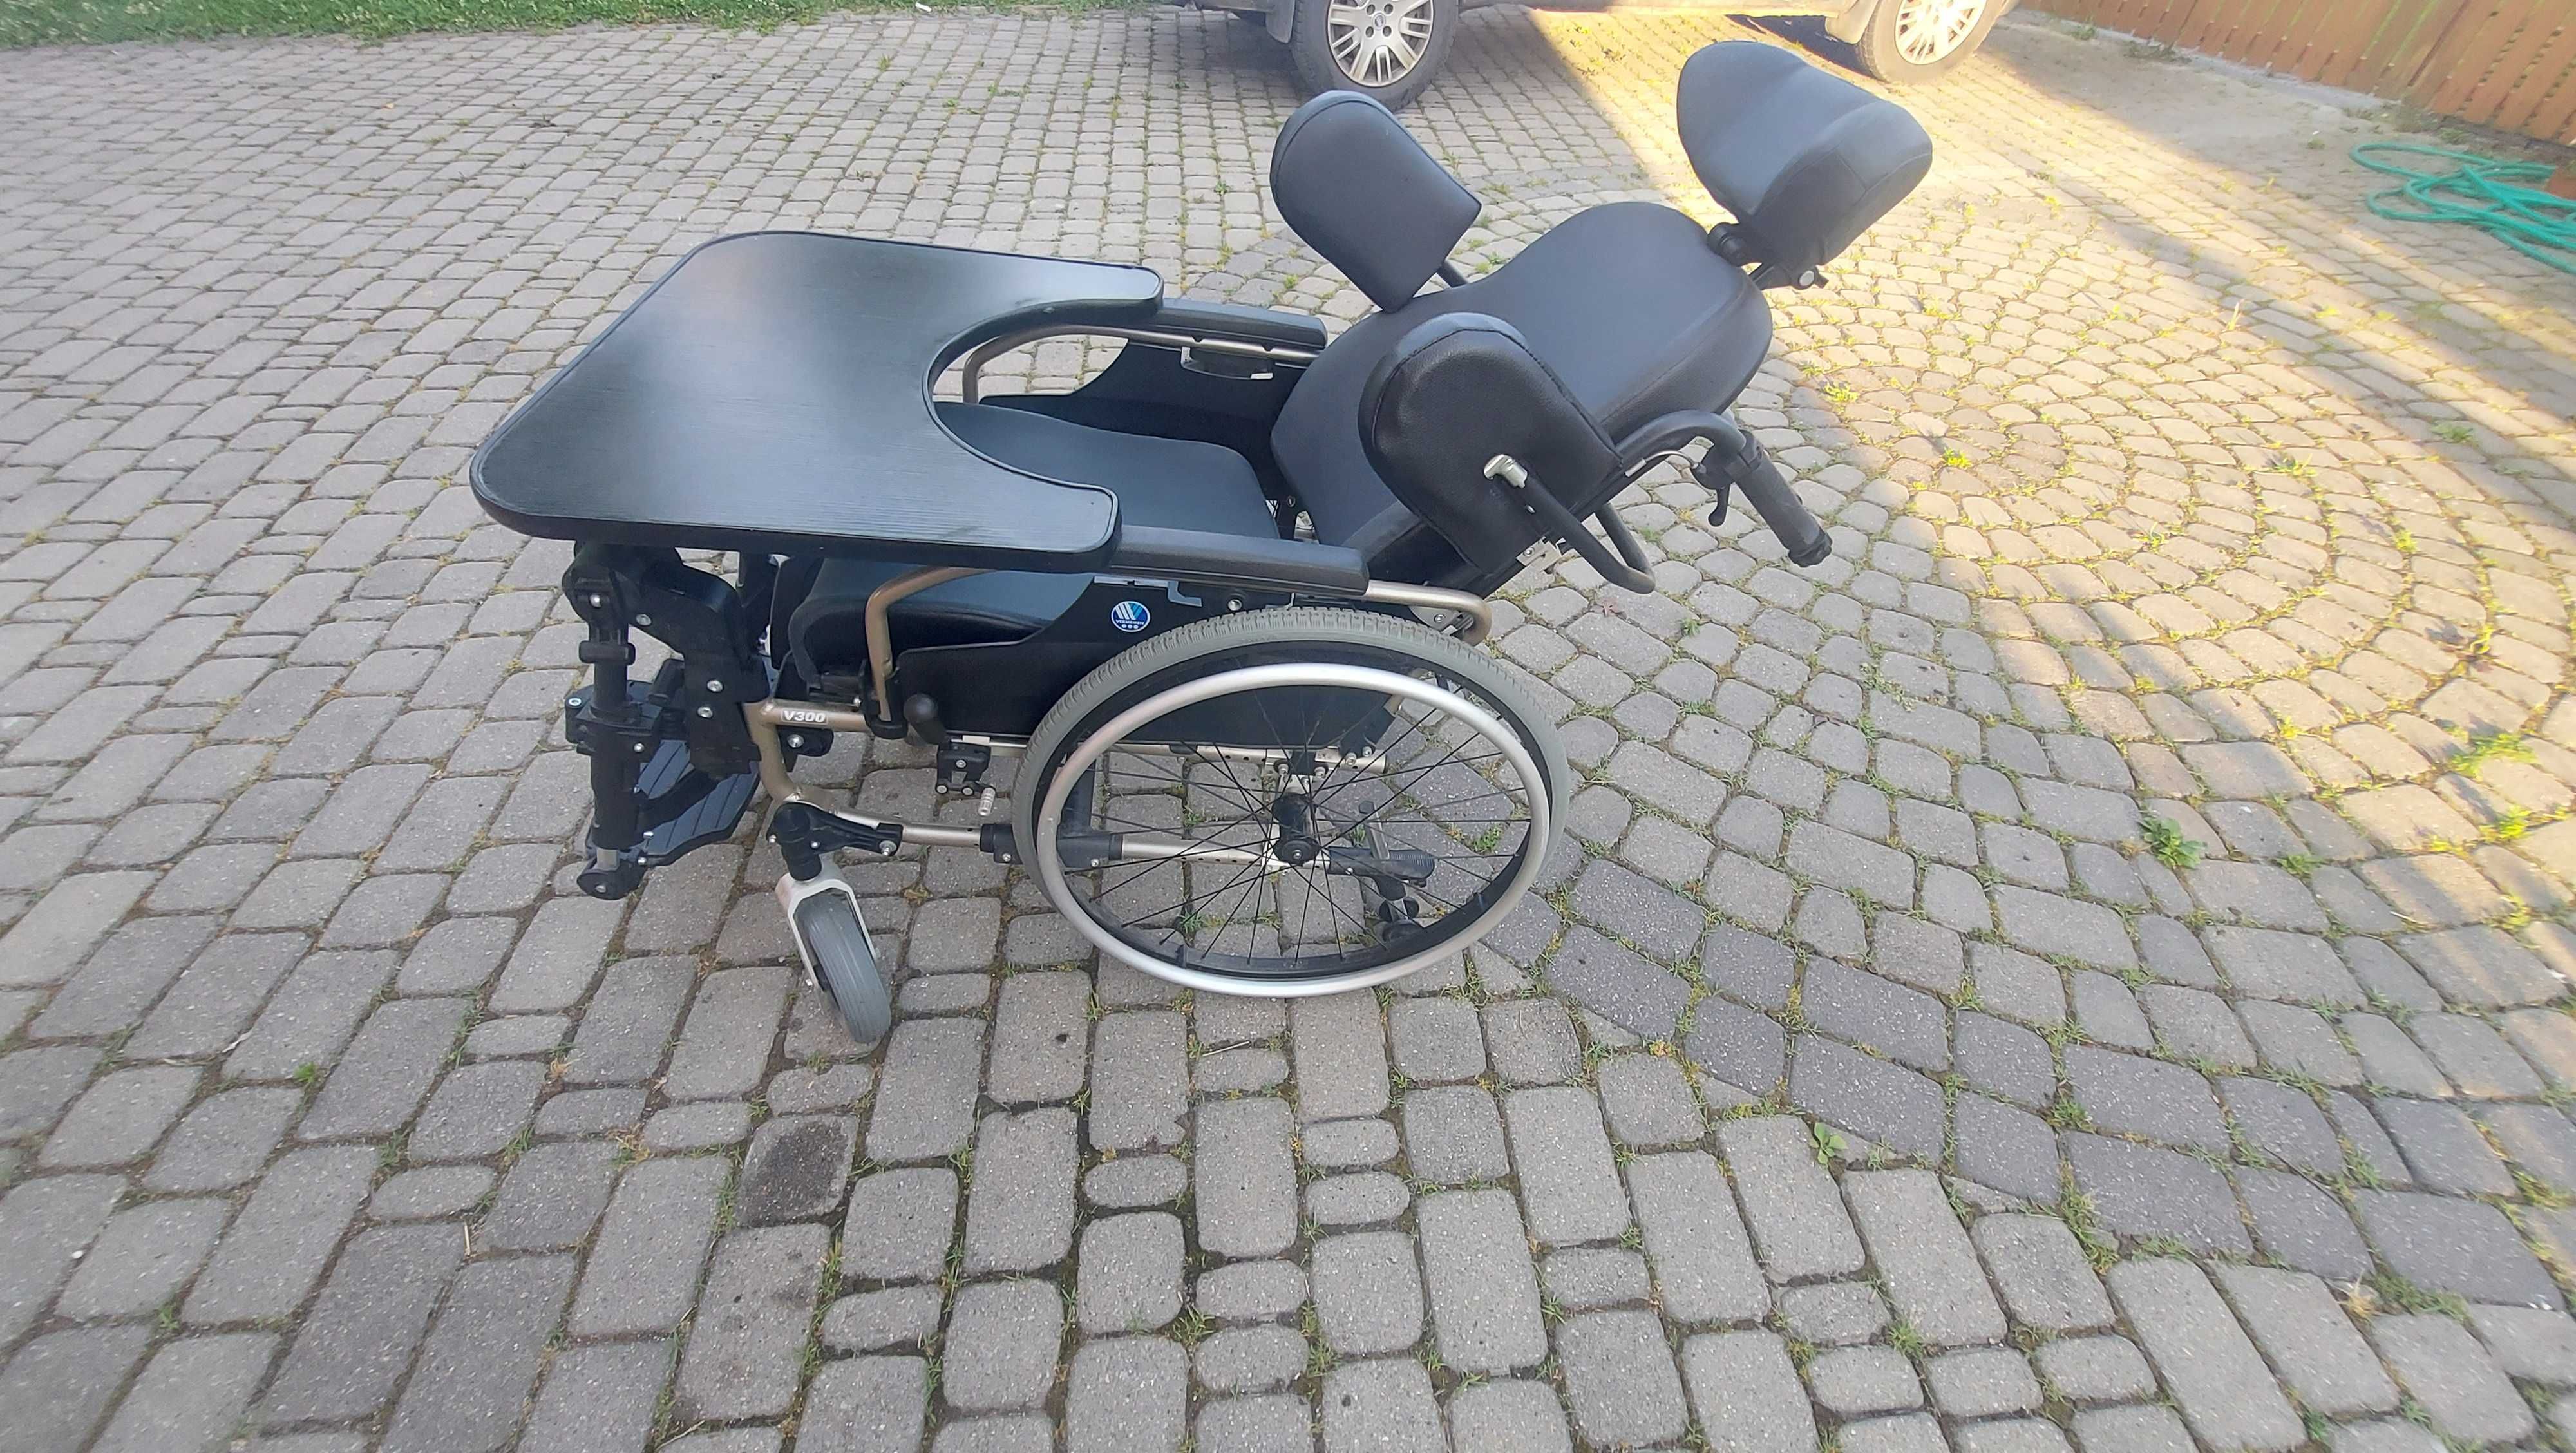 Sprzedam wózek inwalidzki vermeiren.Stan bardzo dobry.